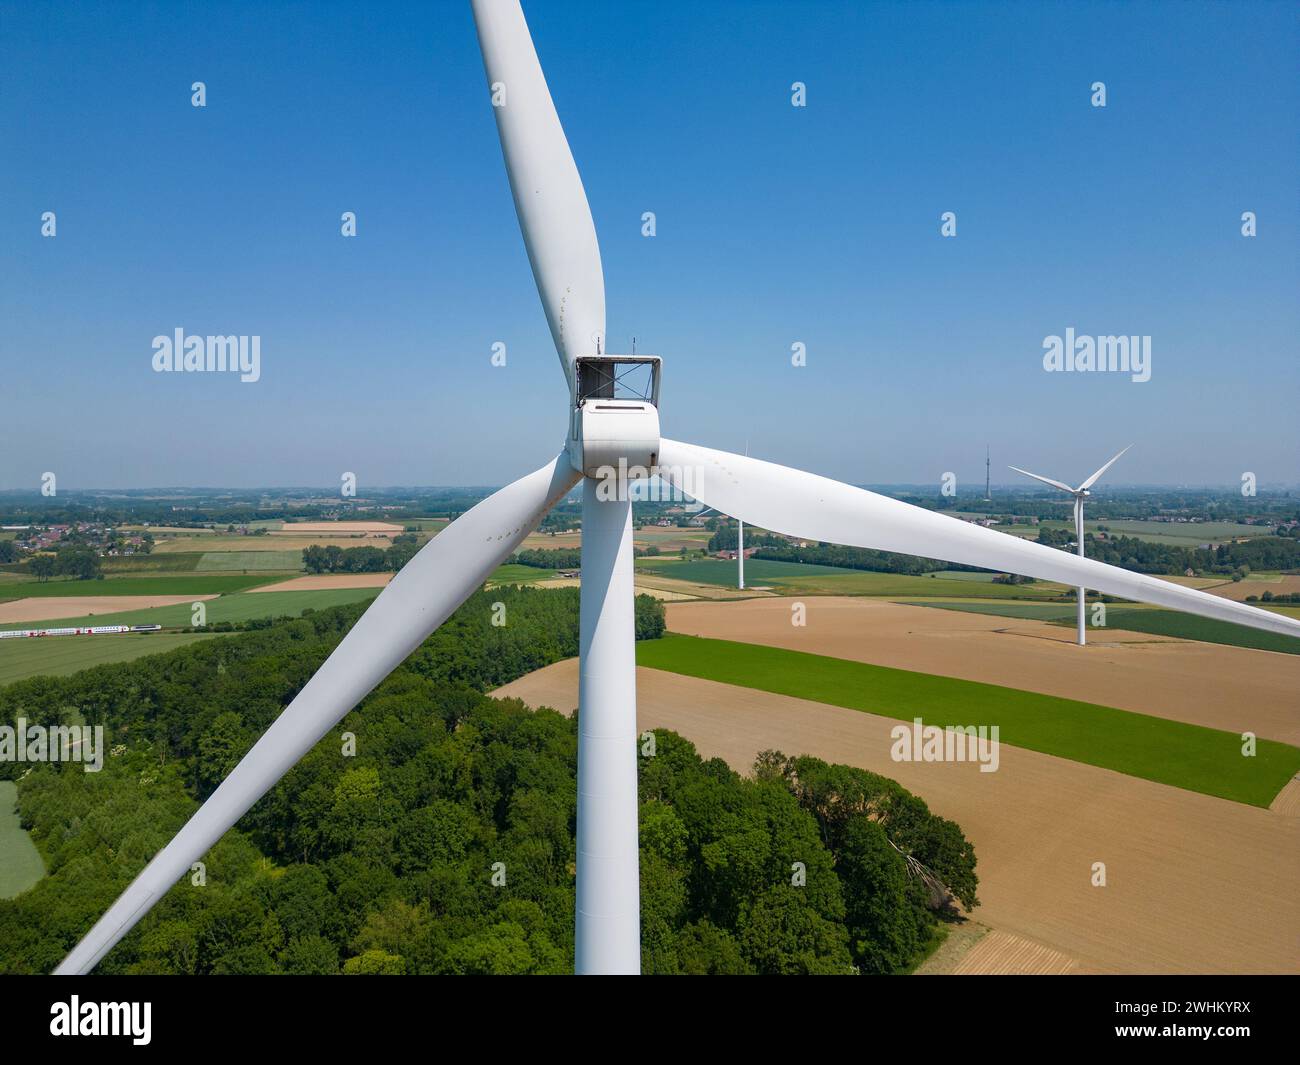 Près de la turbine. Éolienne vue aérienne - développement durable, respectueux de l'environnement. Moulins à vent pendant le su lumineux Banque D'Images